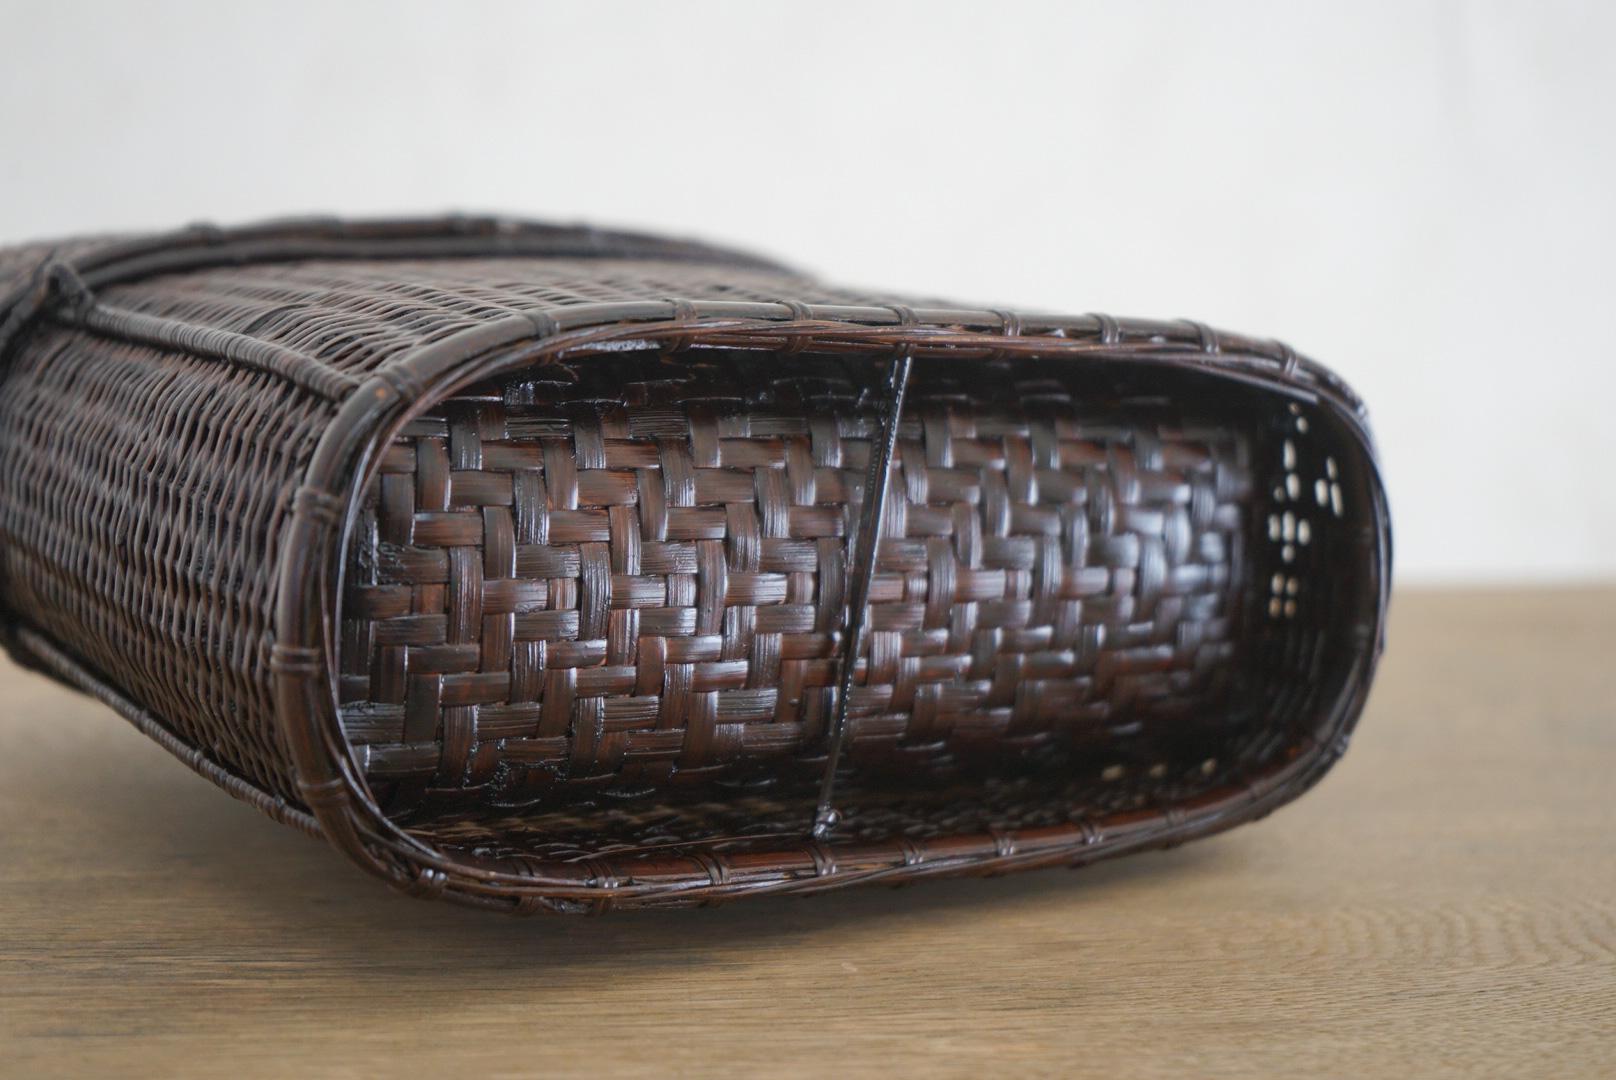 Japanese antique old Basket wabi-sabi folk art bamboo knitting 3